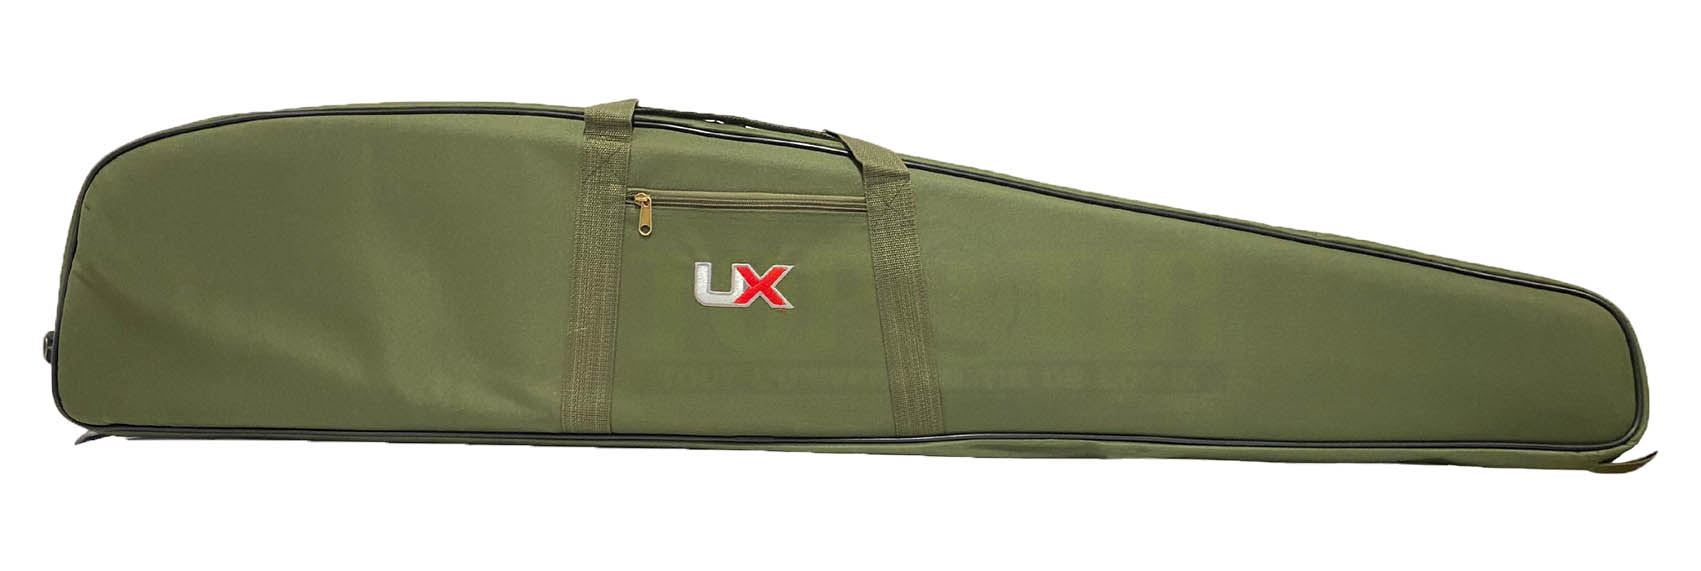 Fourreau carabine Umarex kaki avec rangements